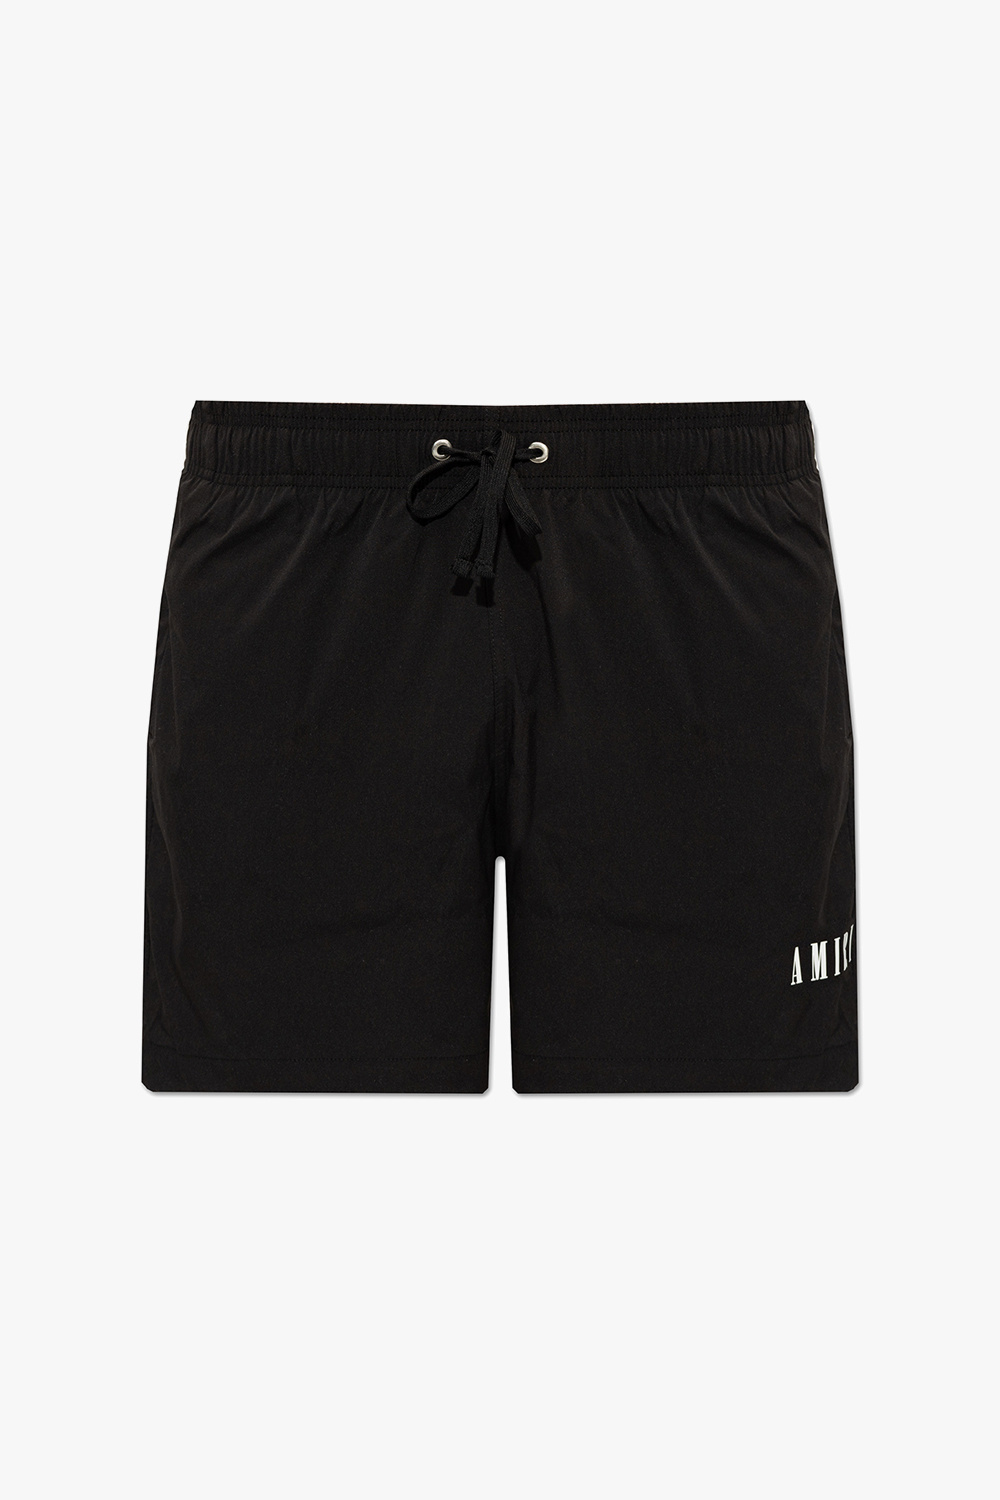 Amiri Swim x002 shorts